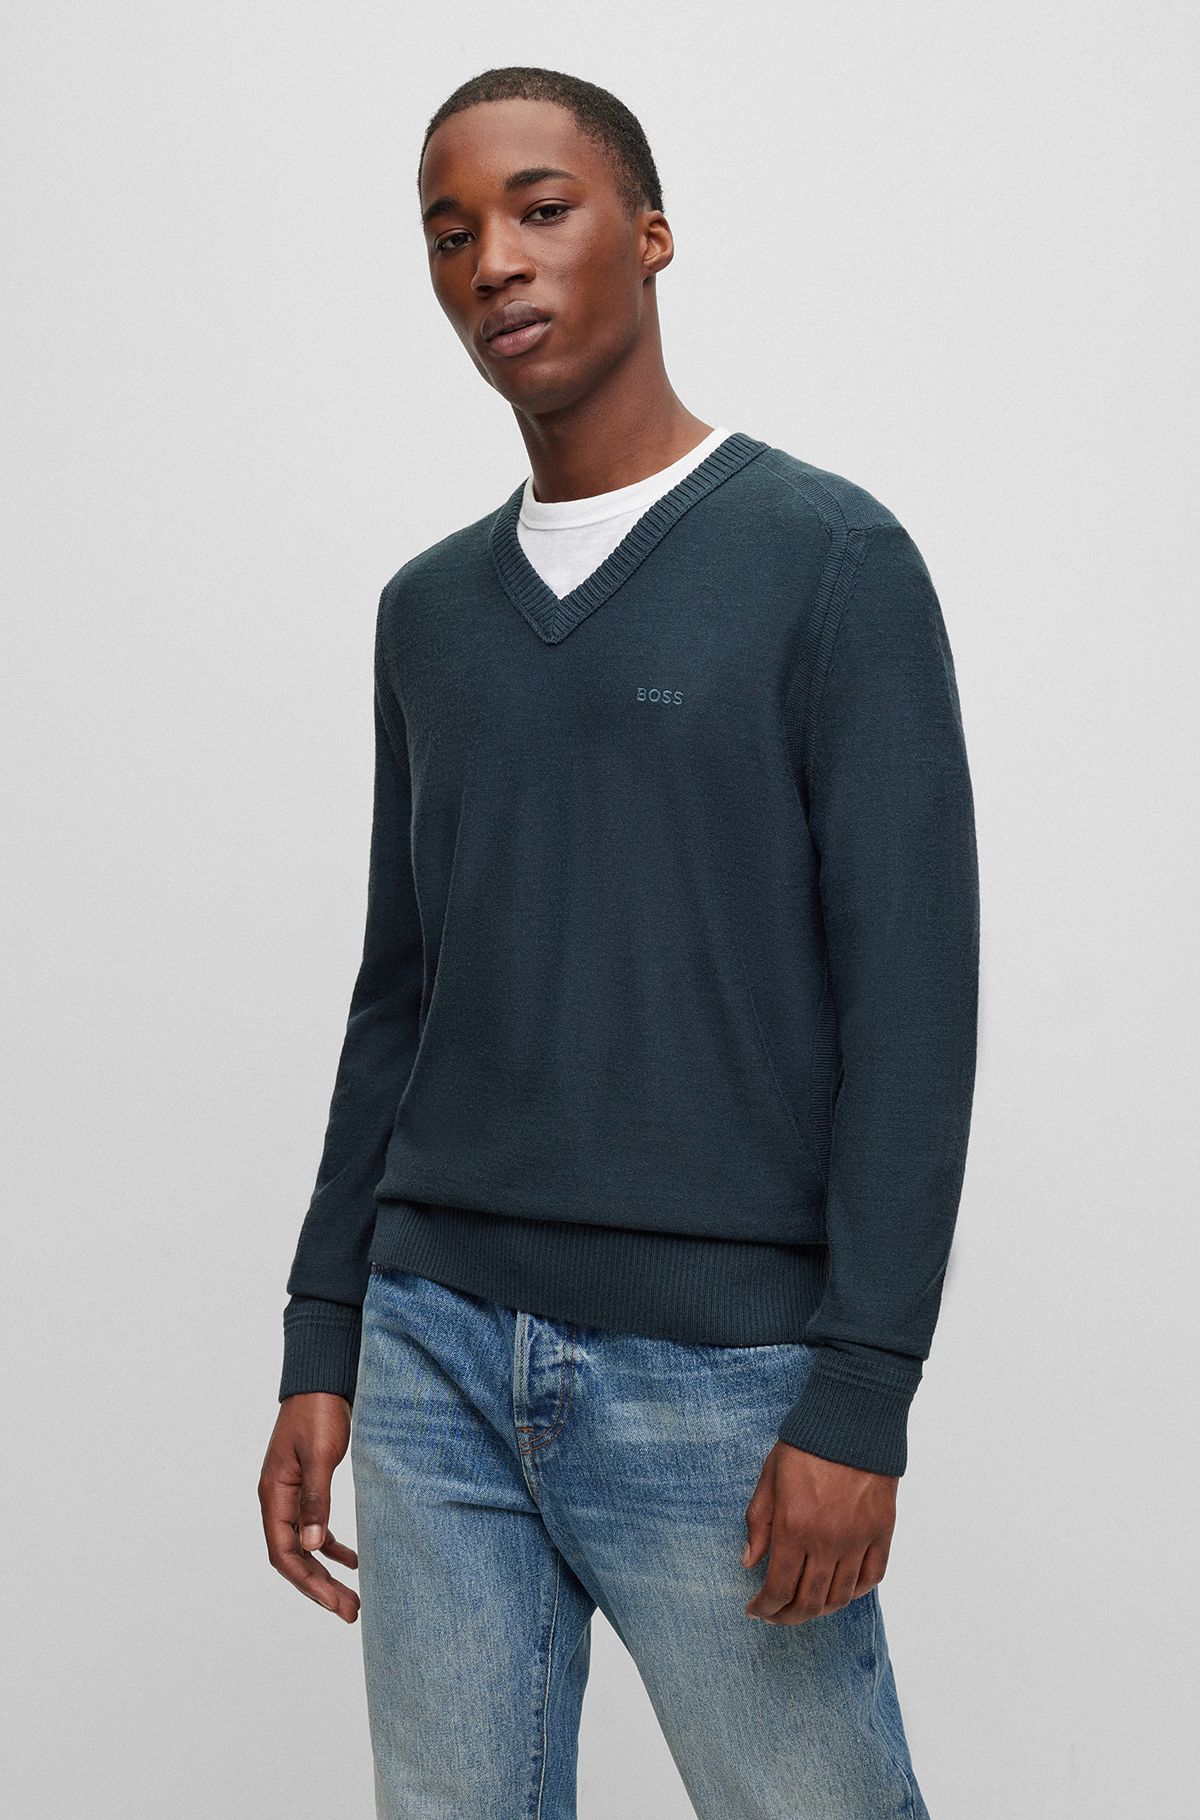 Wool-blend regular-fit sweater with logo detail, Light Green